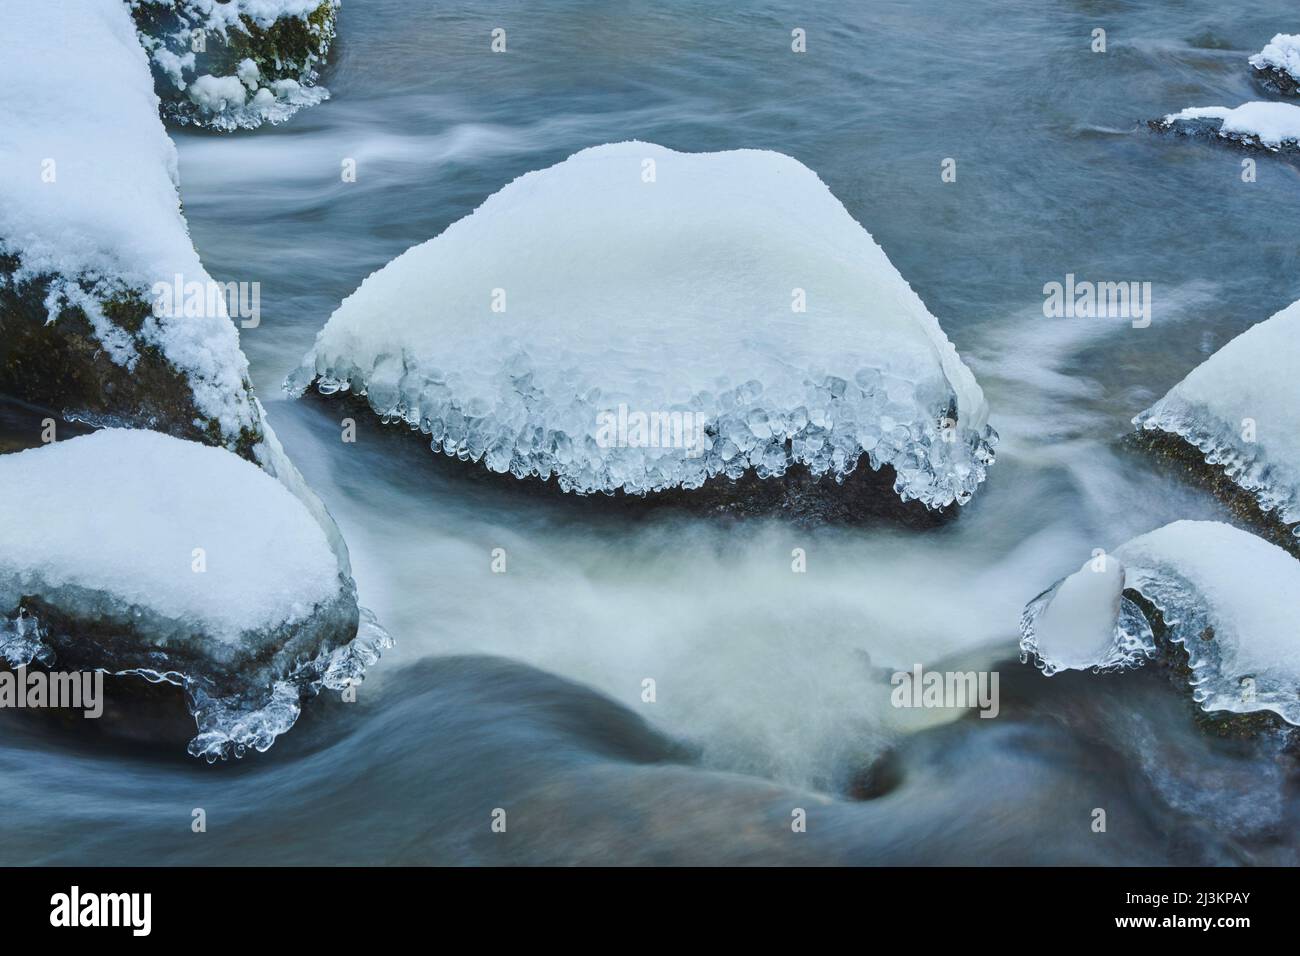 Dettagli su ghiaccio e neve in un ruscello che scorre attraverso una foresta innevata nella Riserva Naturale dell'Inferno, Foresta Bavarese; Palatinato superiore, Baviera, Germania Foto Stock